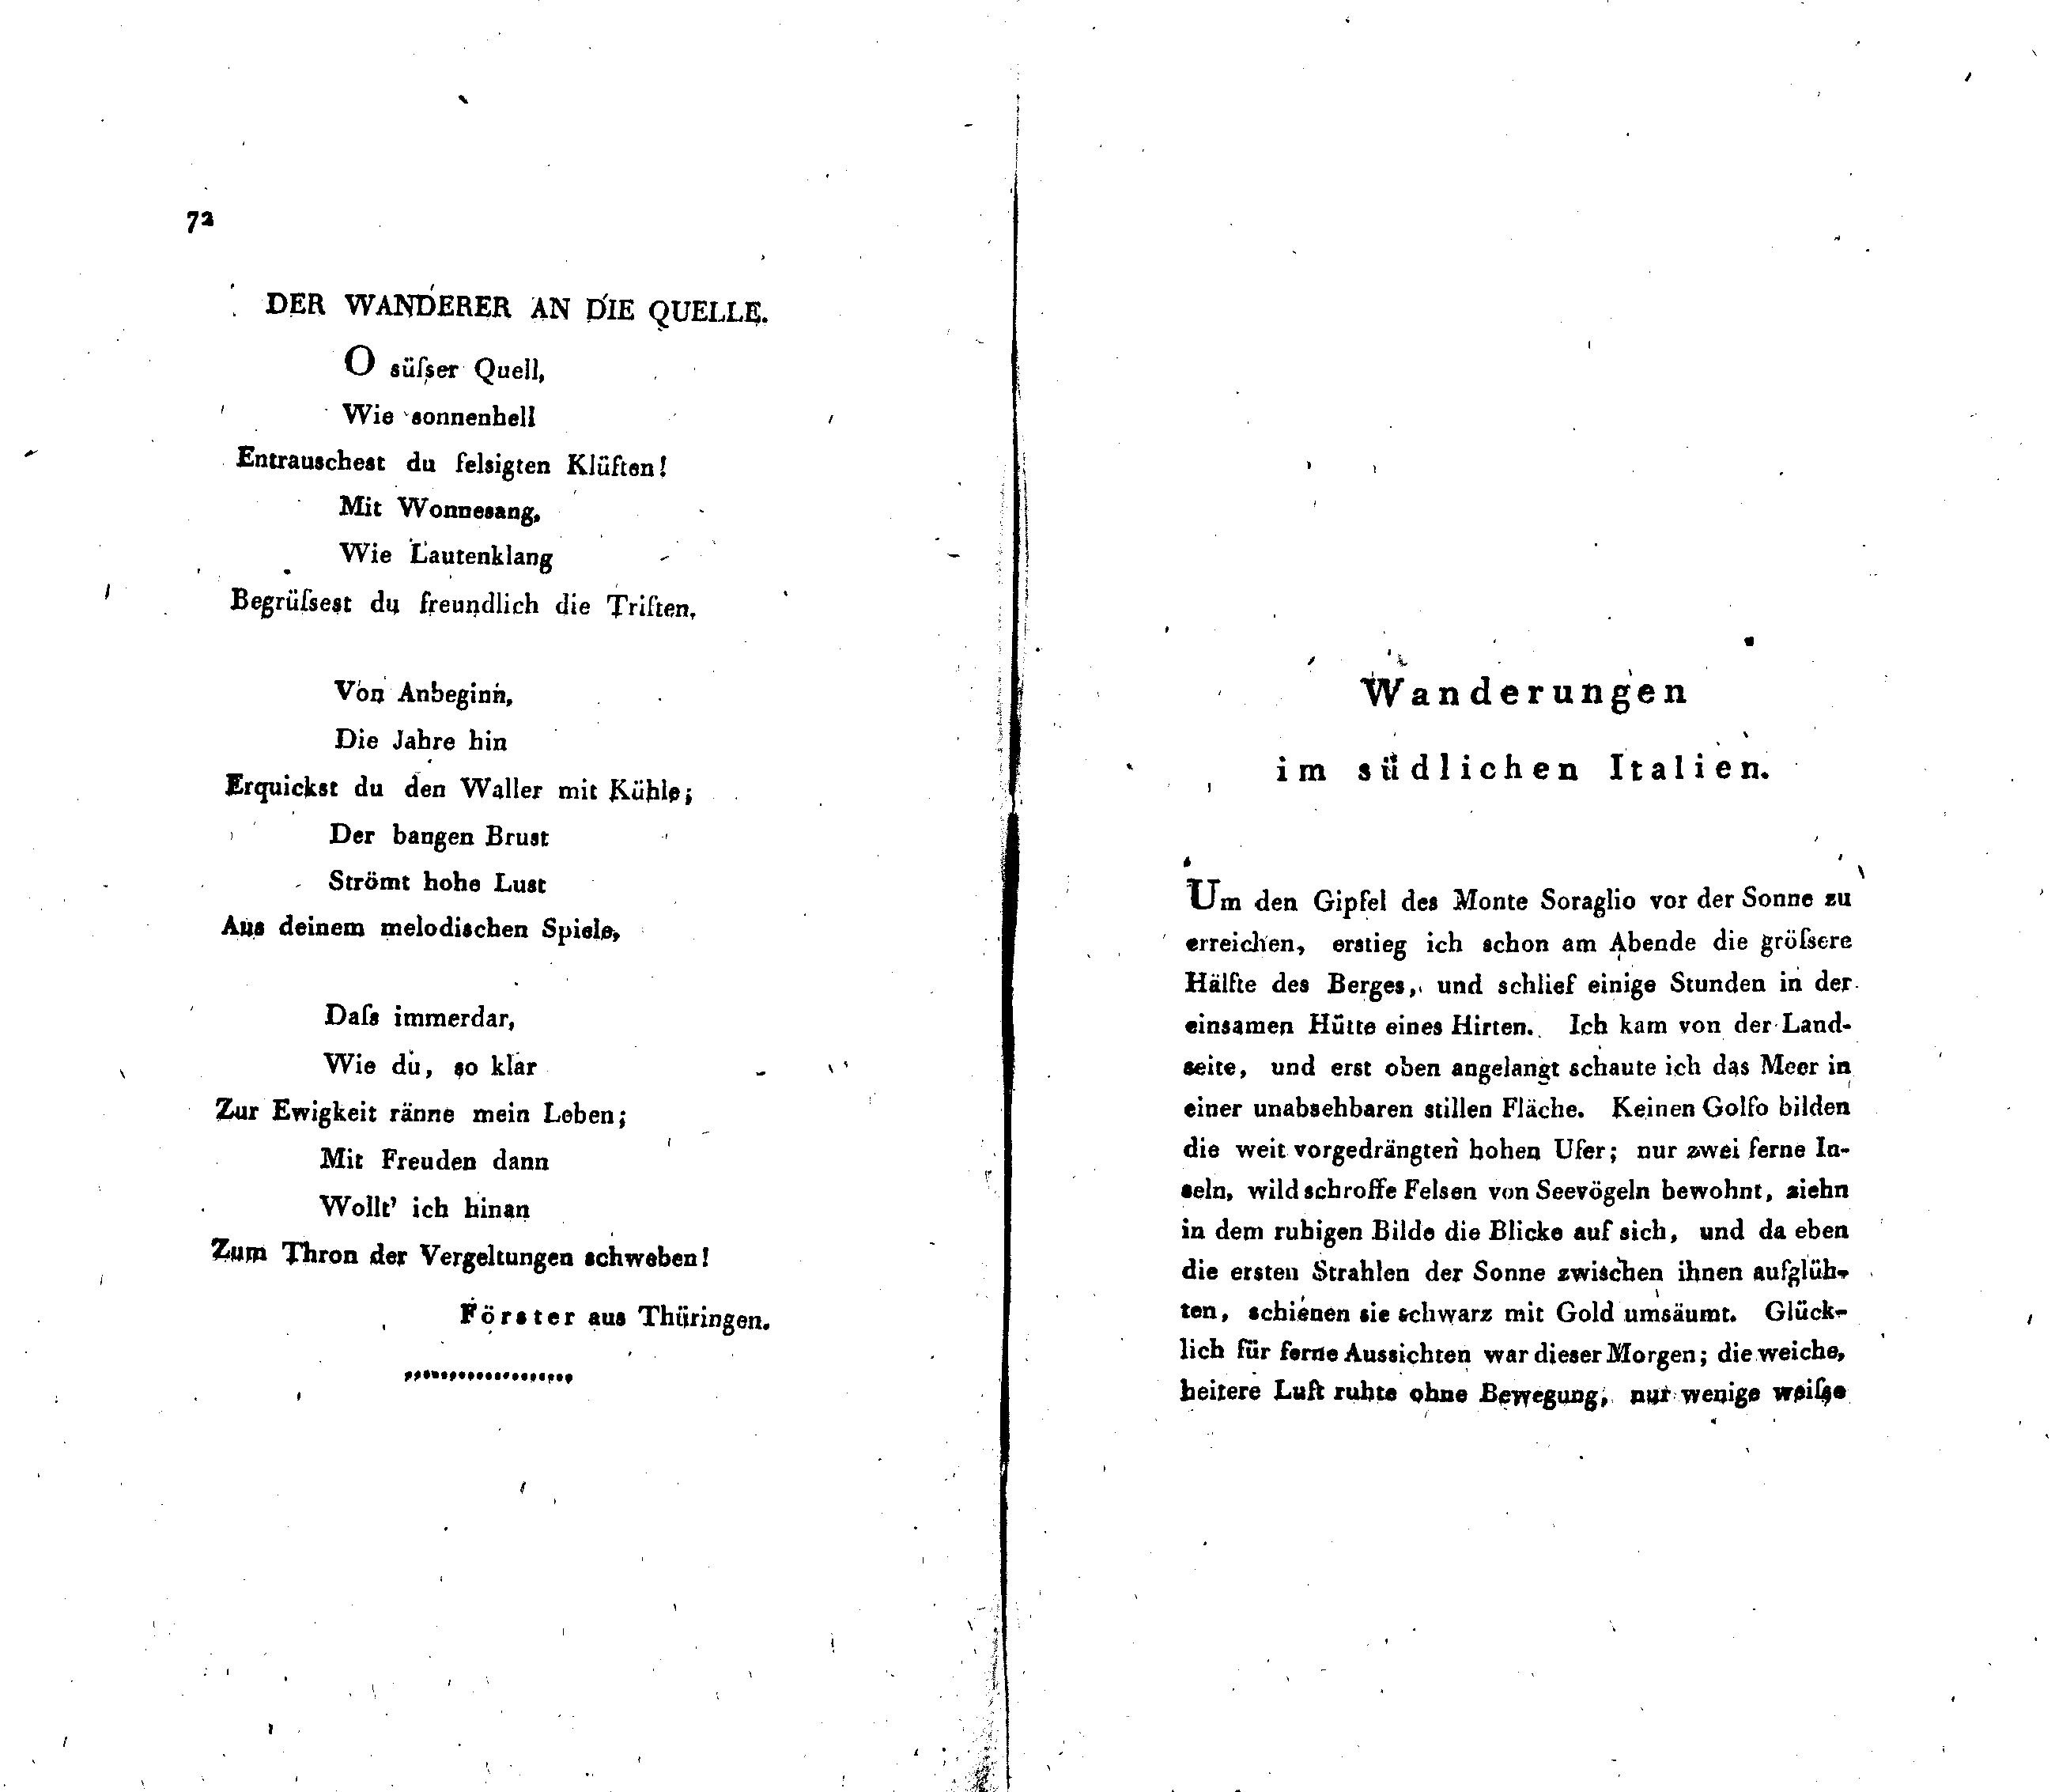 Wanderungen im südlichen Italien [1] (1820) | 1. (72-73) Main body of text